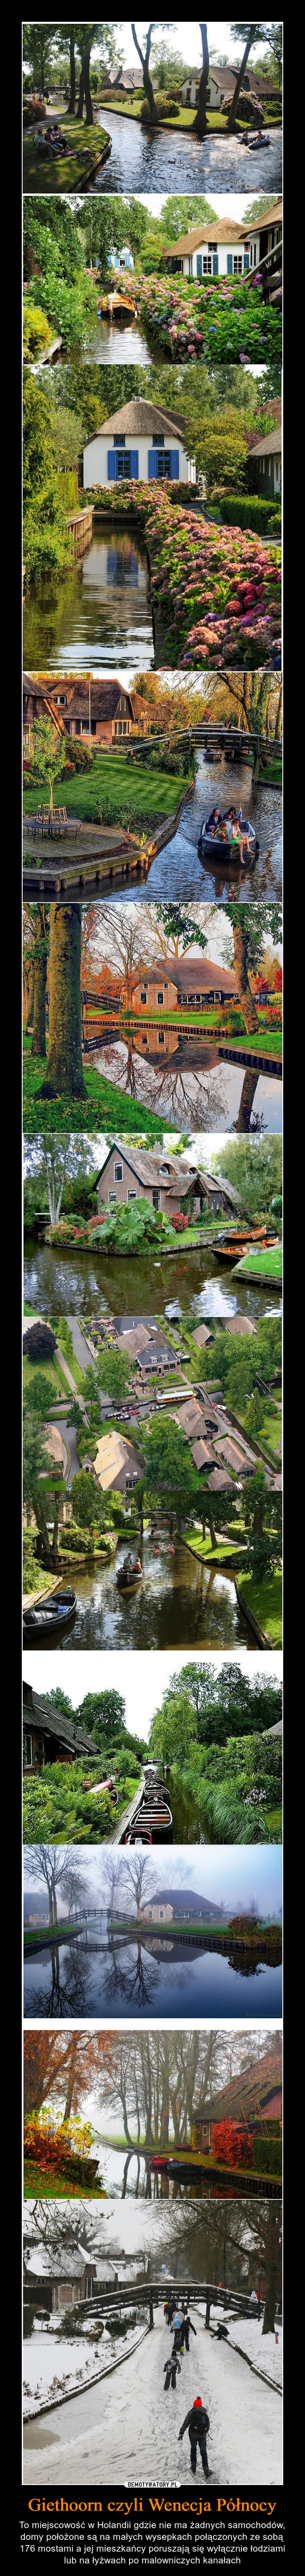 Giethoorn czyli Wenecja Północy – To miejscowość w Holandii gdzie nie ma żadnych samochodów, domy położone są na małych wysepkach połączonych ze sobą 176 mostami a jej mieszkańcy poruszają się wyłącznie łodziami lub na łyżwach po malowniczych kanałach 